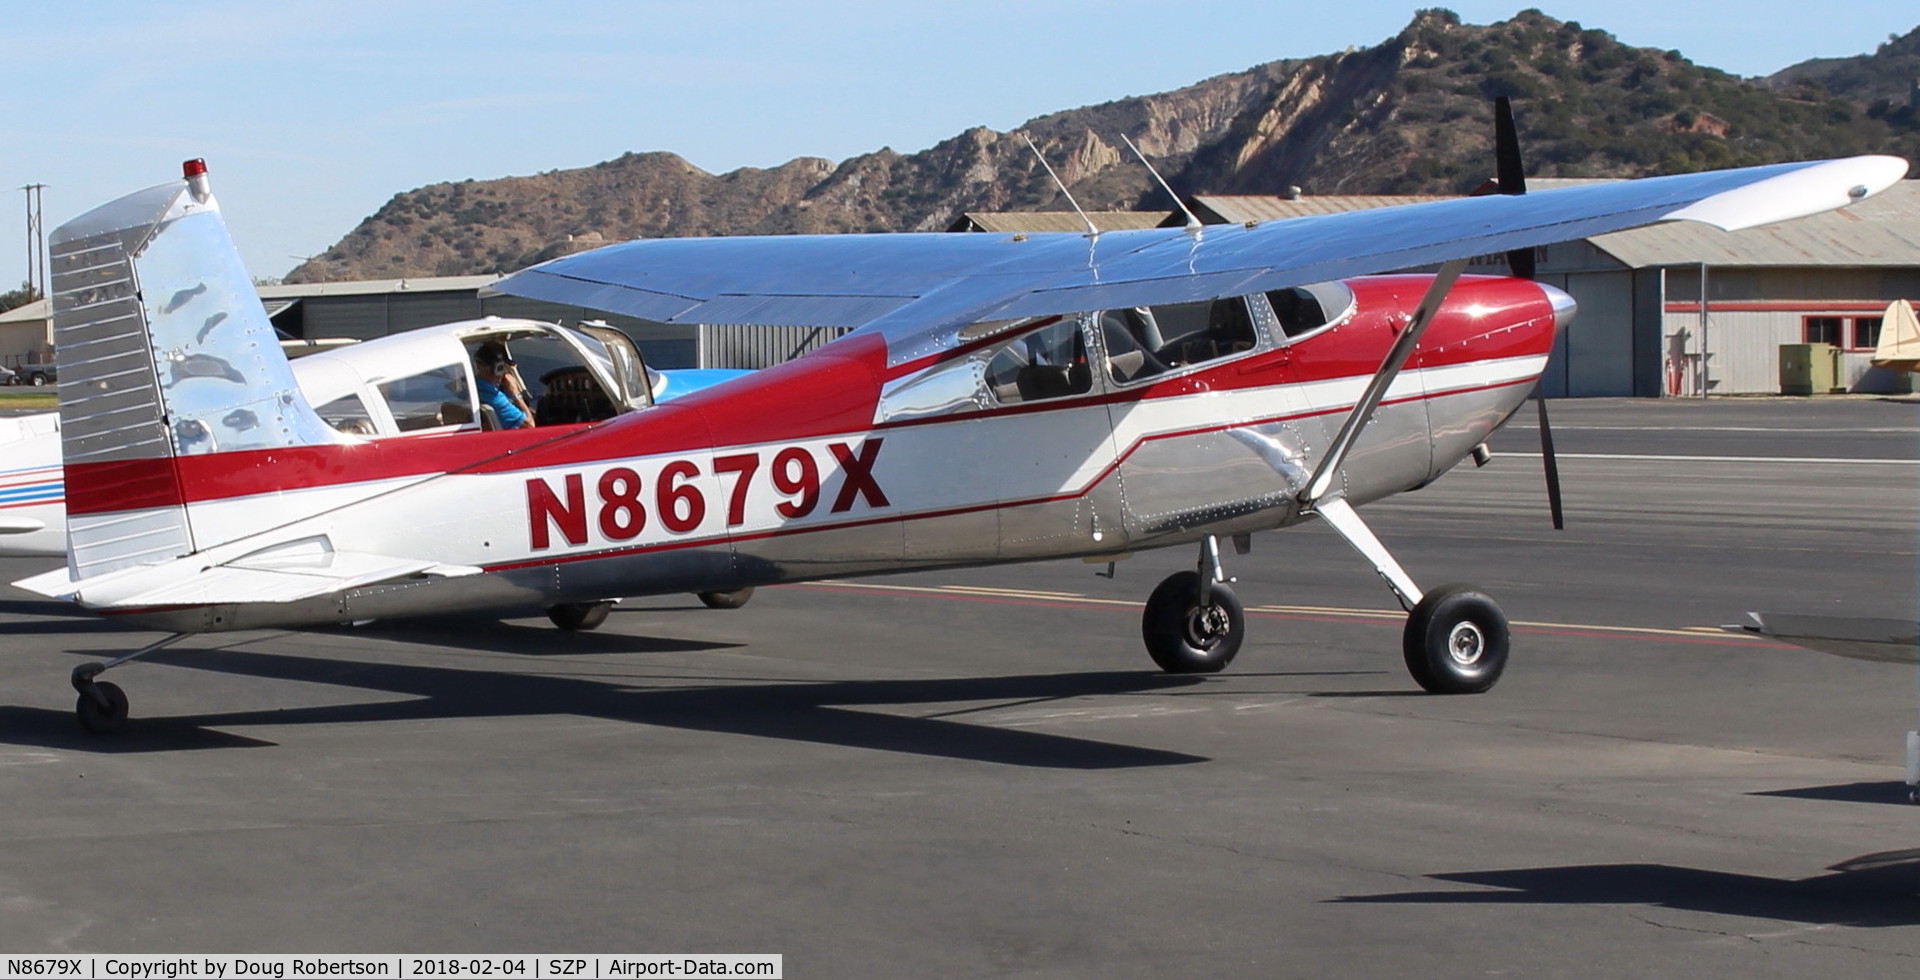 N8679X, 1961 Cessna 180E C/N 18051079, 1961 Cessna 180E, Continental O-470-L or R, 230 Hp